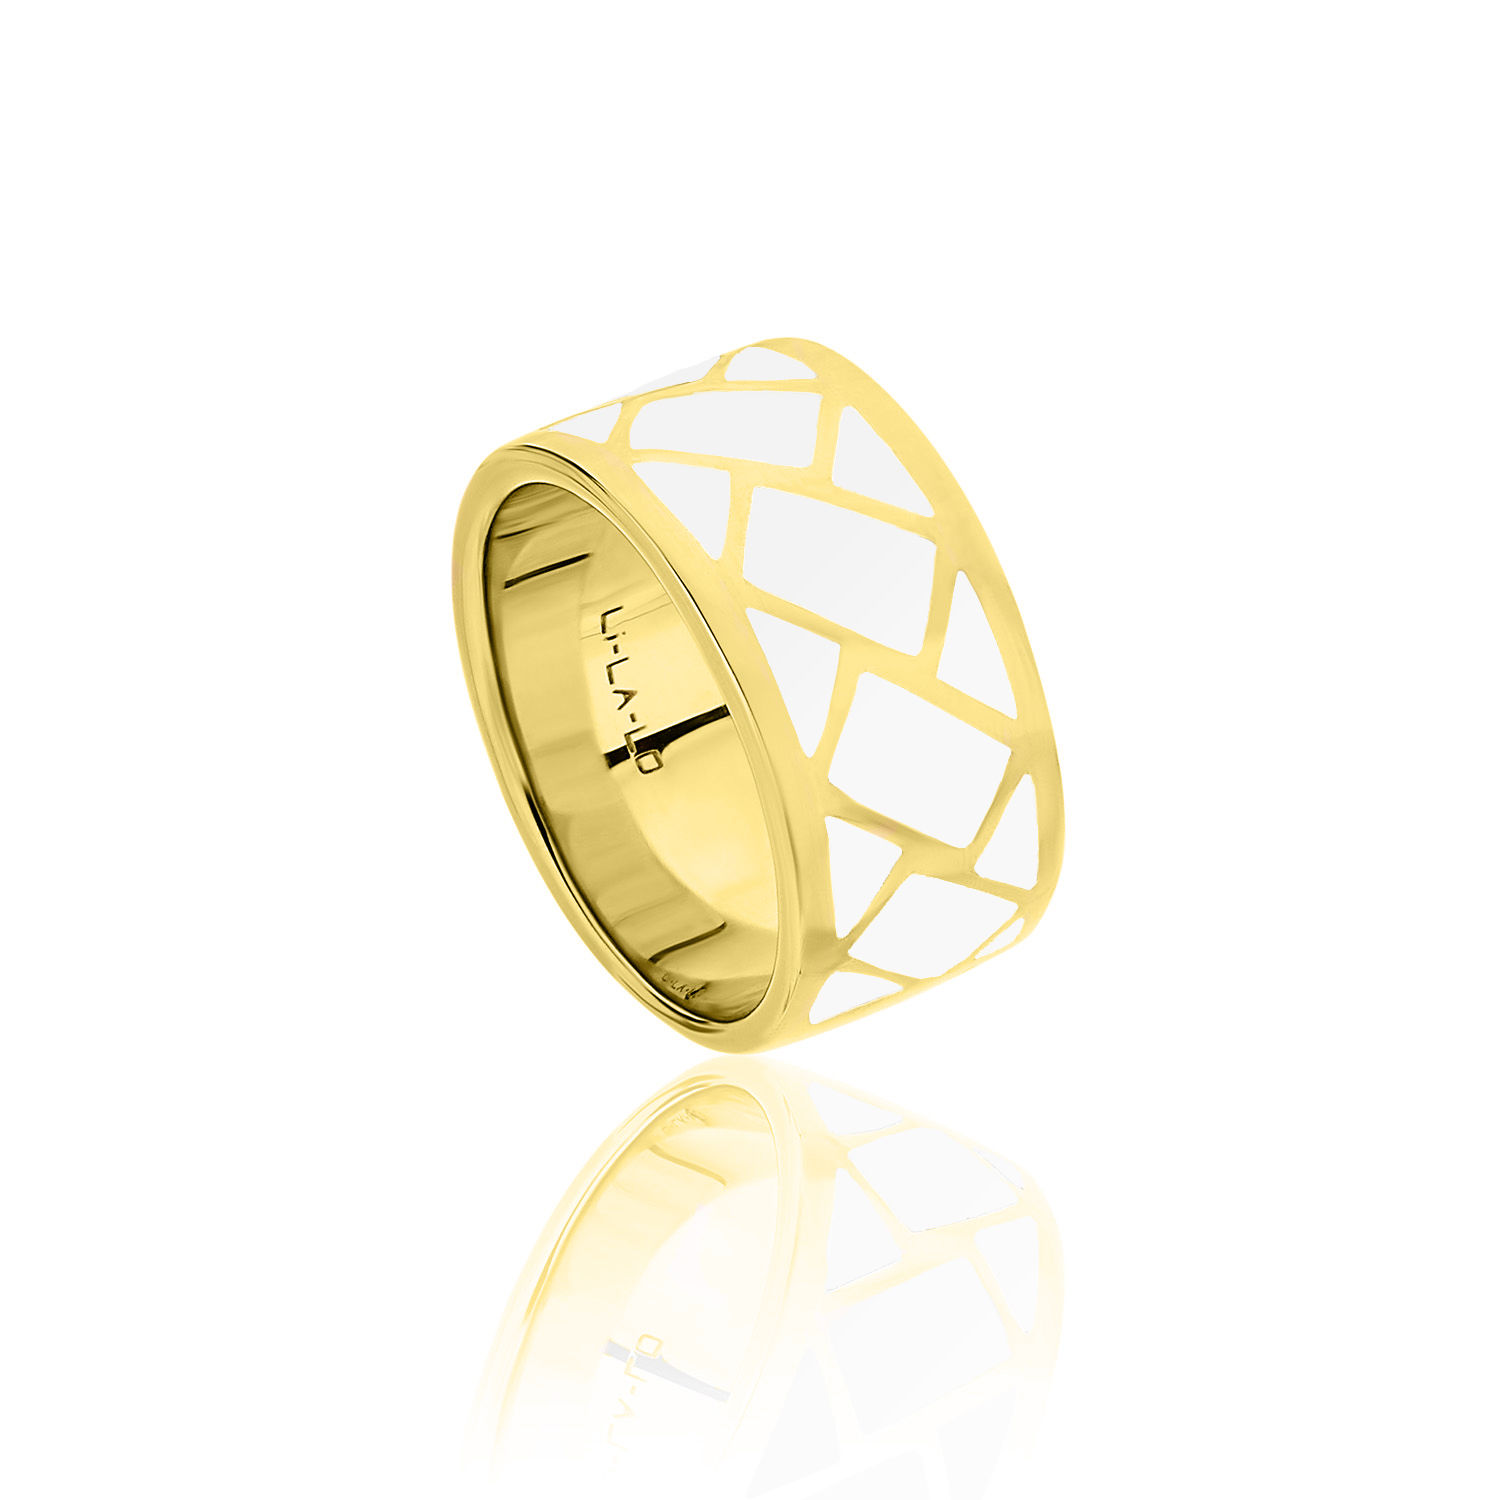 Δαχτυλίδι Lotus από επιχρυσωμένο ασήμι 925° και λευκό σμάλτο